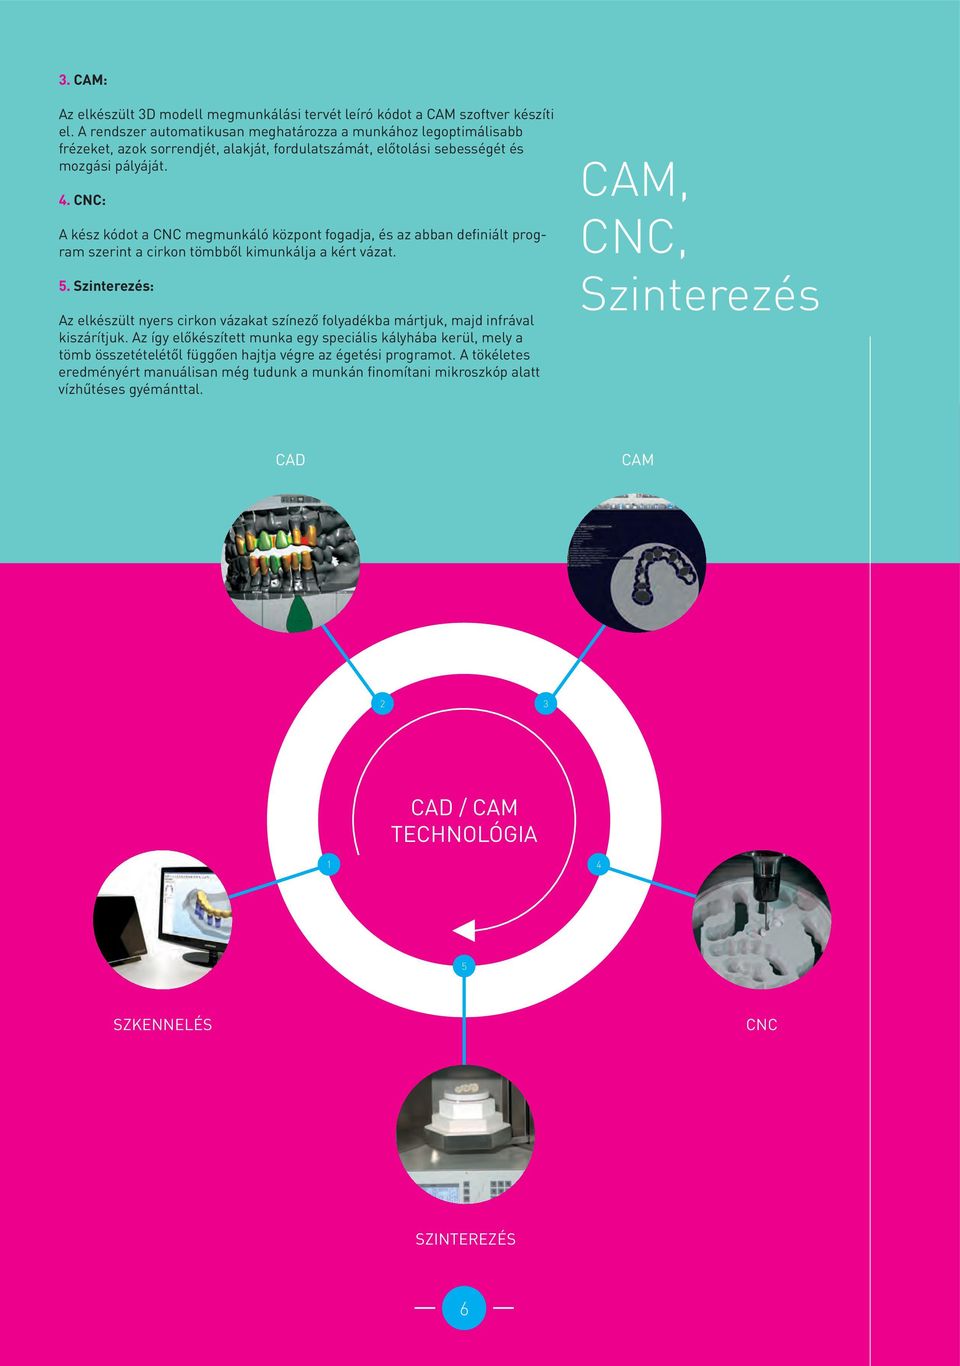 CNC: A kész kódot a CNC megmunkáló központ fogadja, és az abban definiált program szerint a cirkon tömbből kimunkálja a kért vázat. 5.